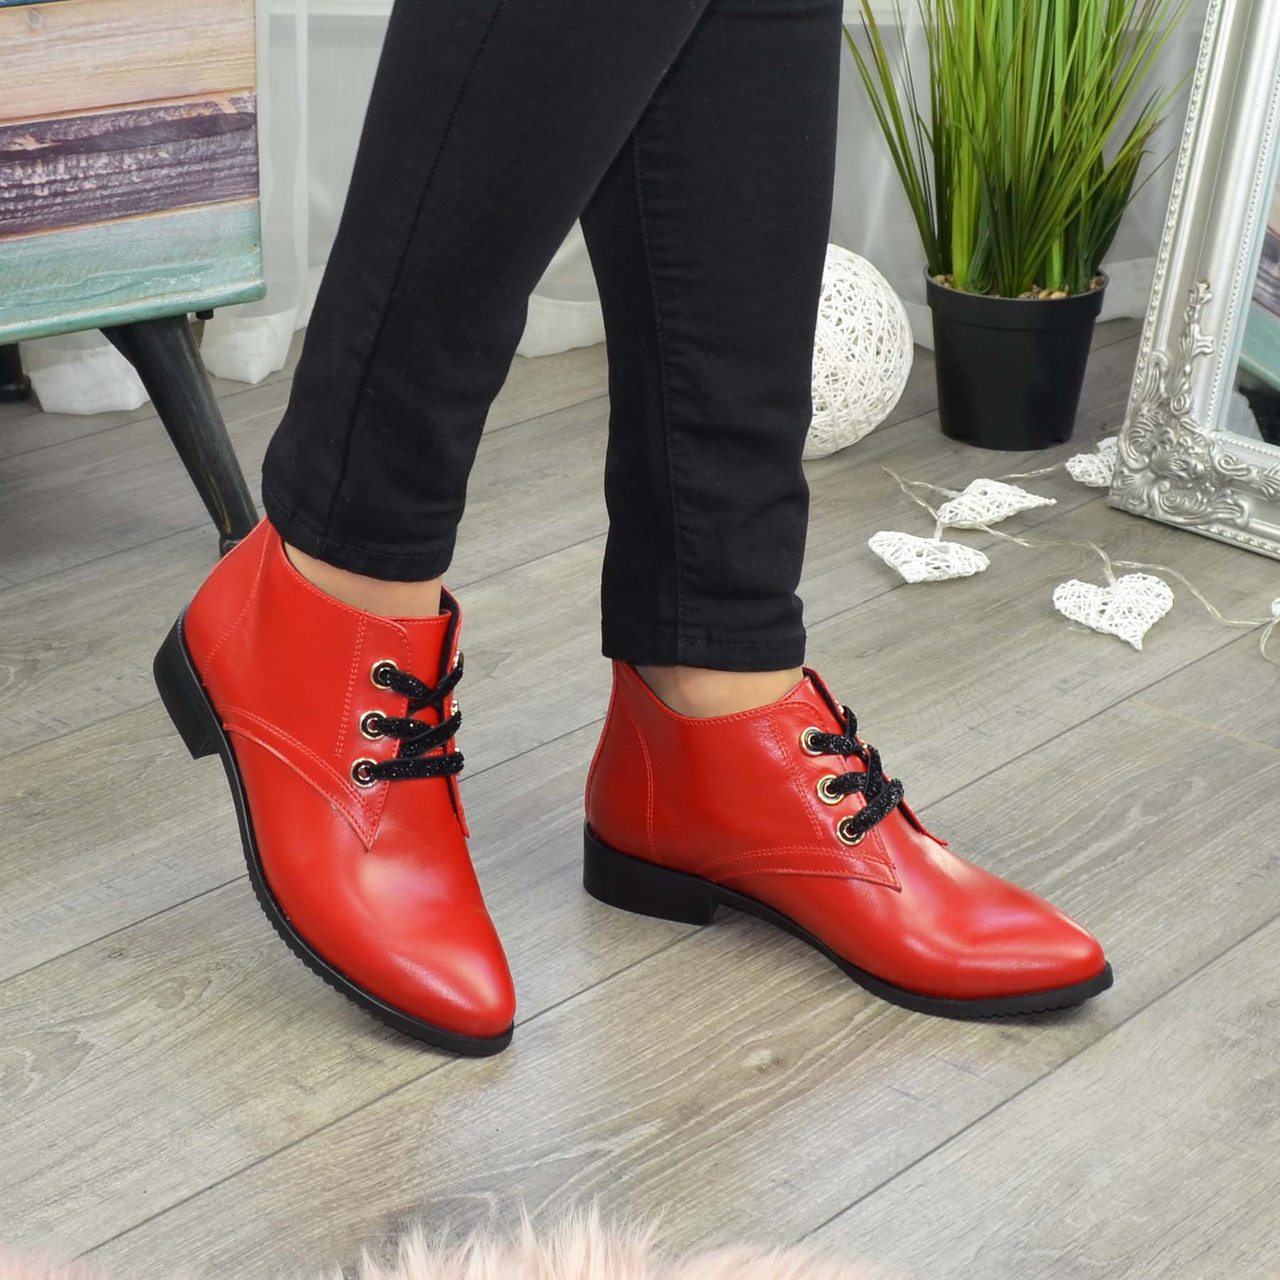 Ботинки женские кожаные на шнуровке, цвет красный